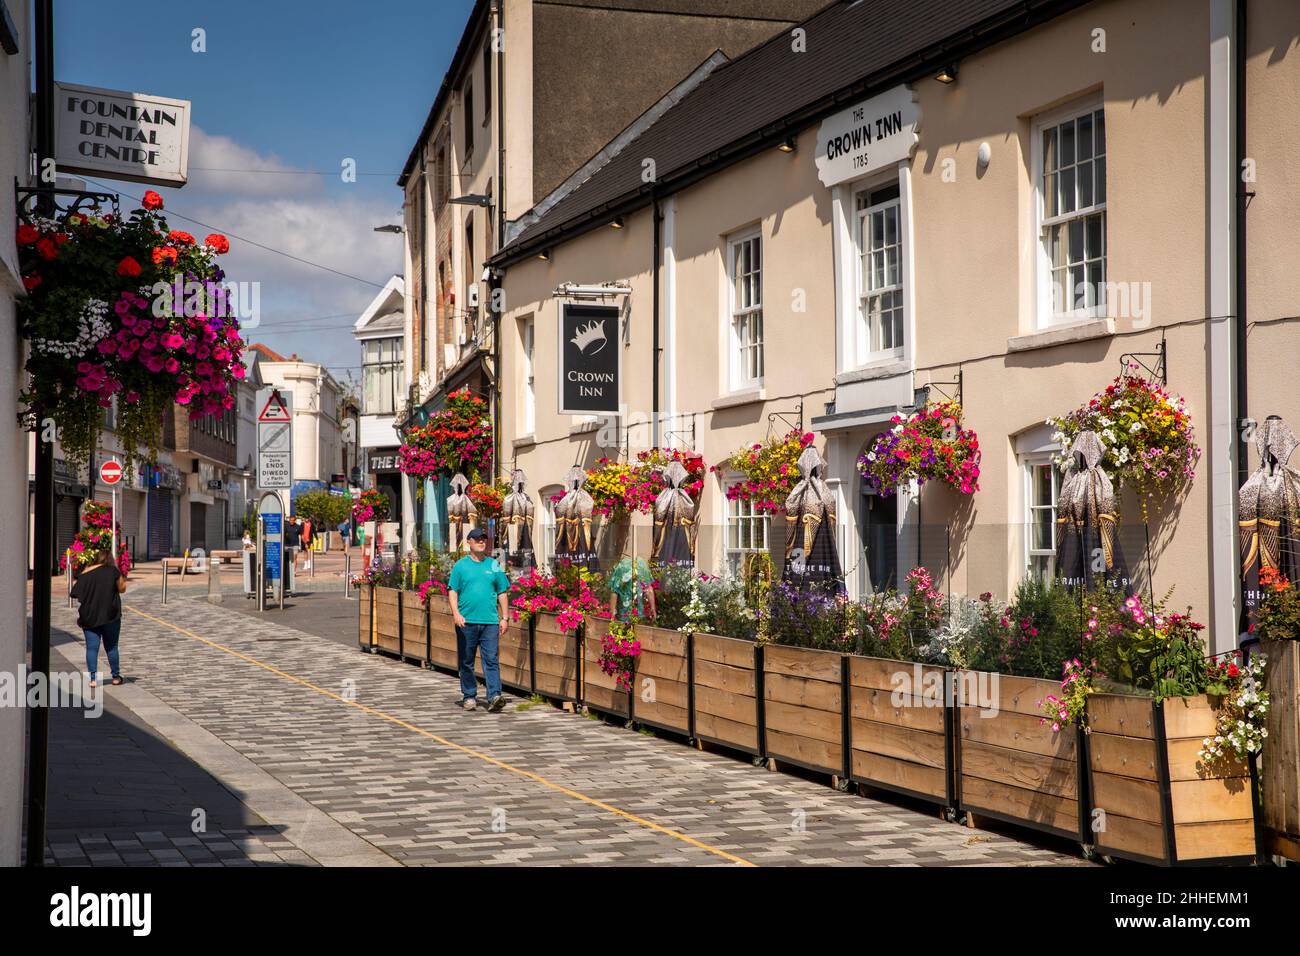 UK, Wales, Merthyr Tydfil, High Street, floral display outside Crown Inn Stock Photo